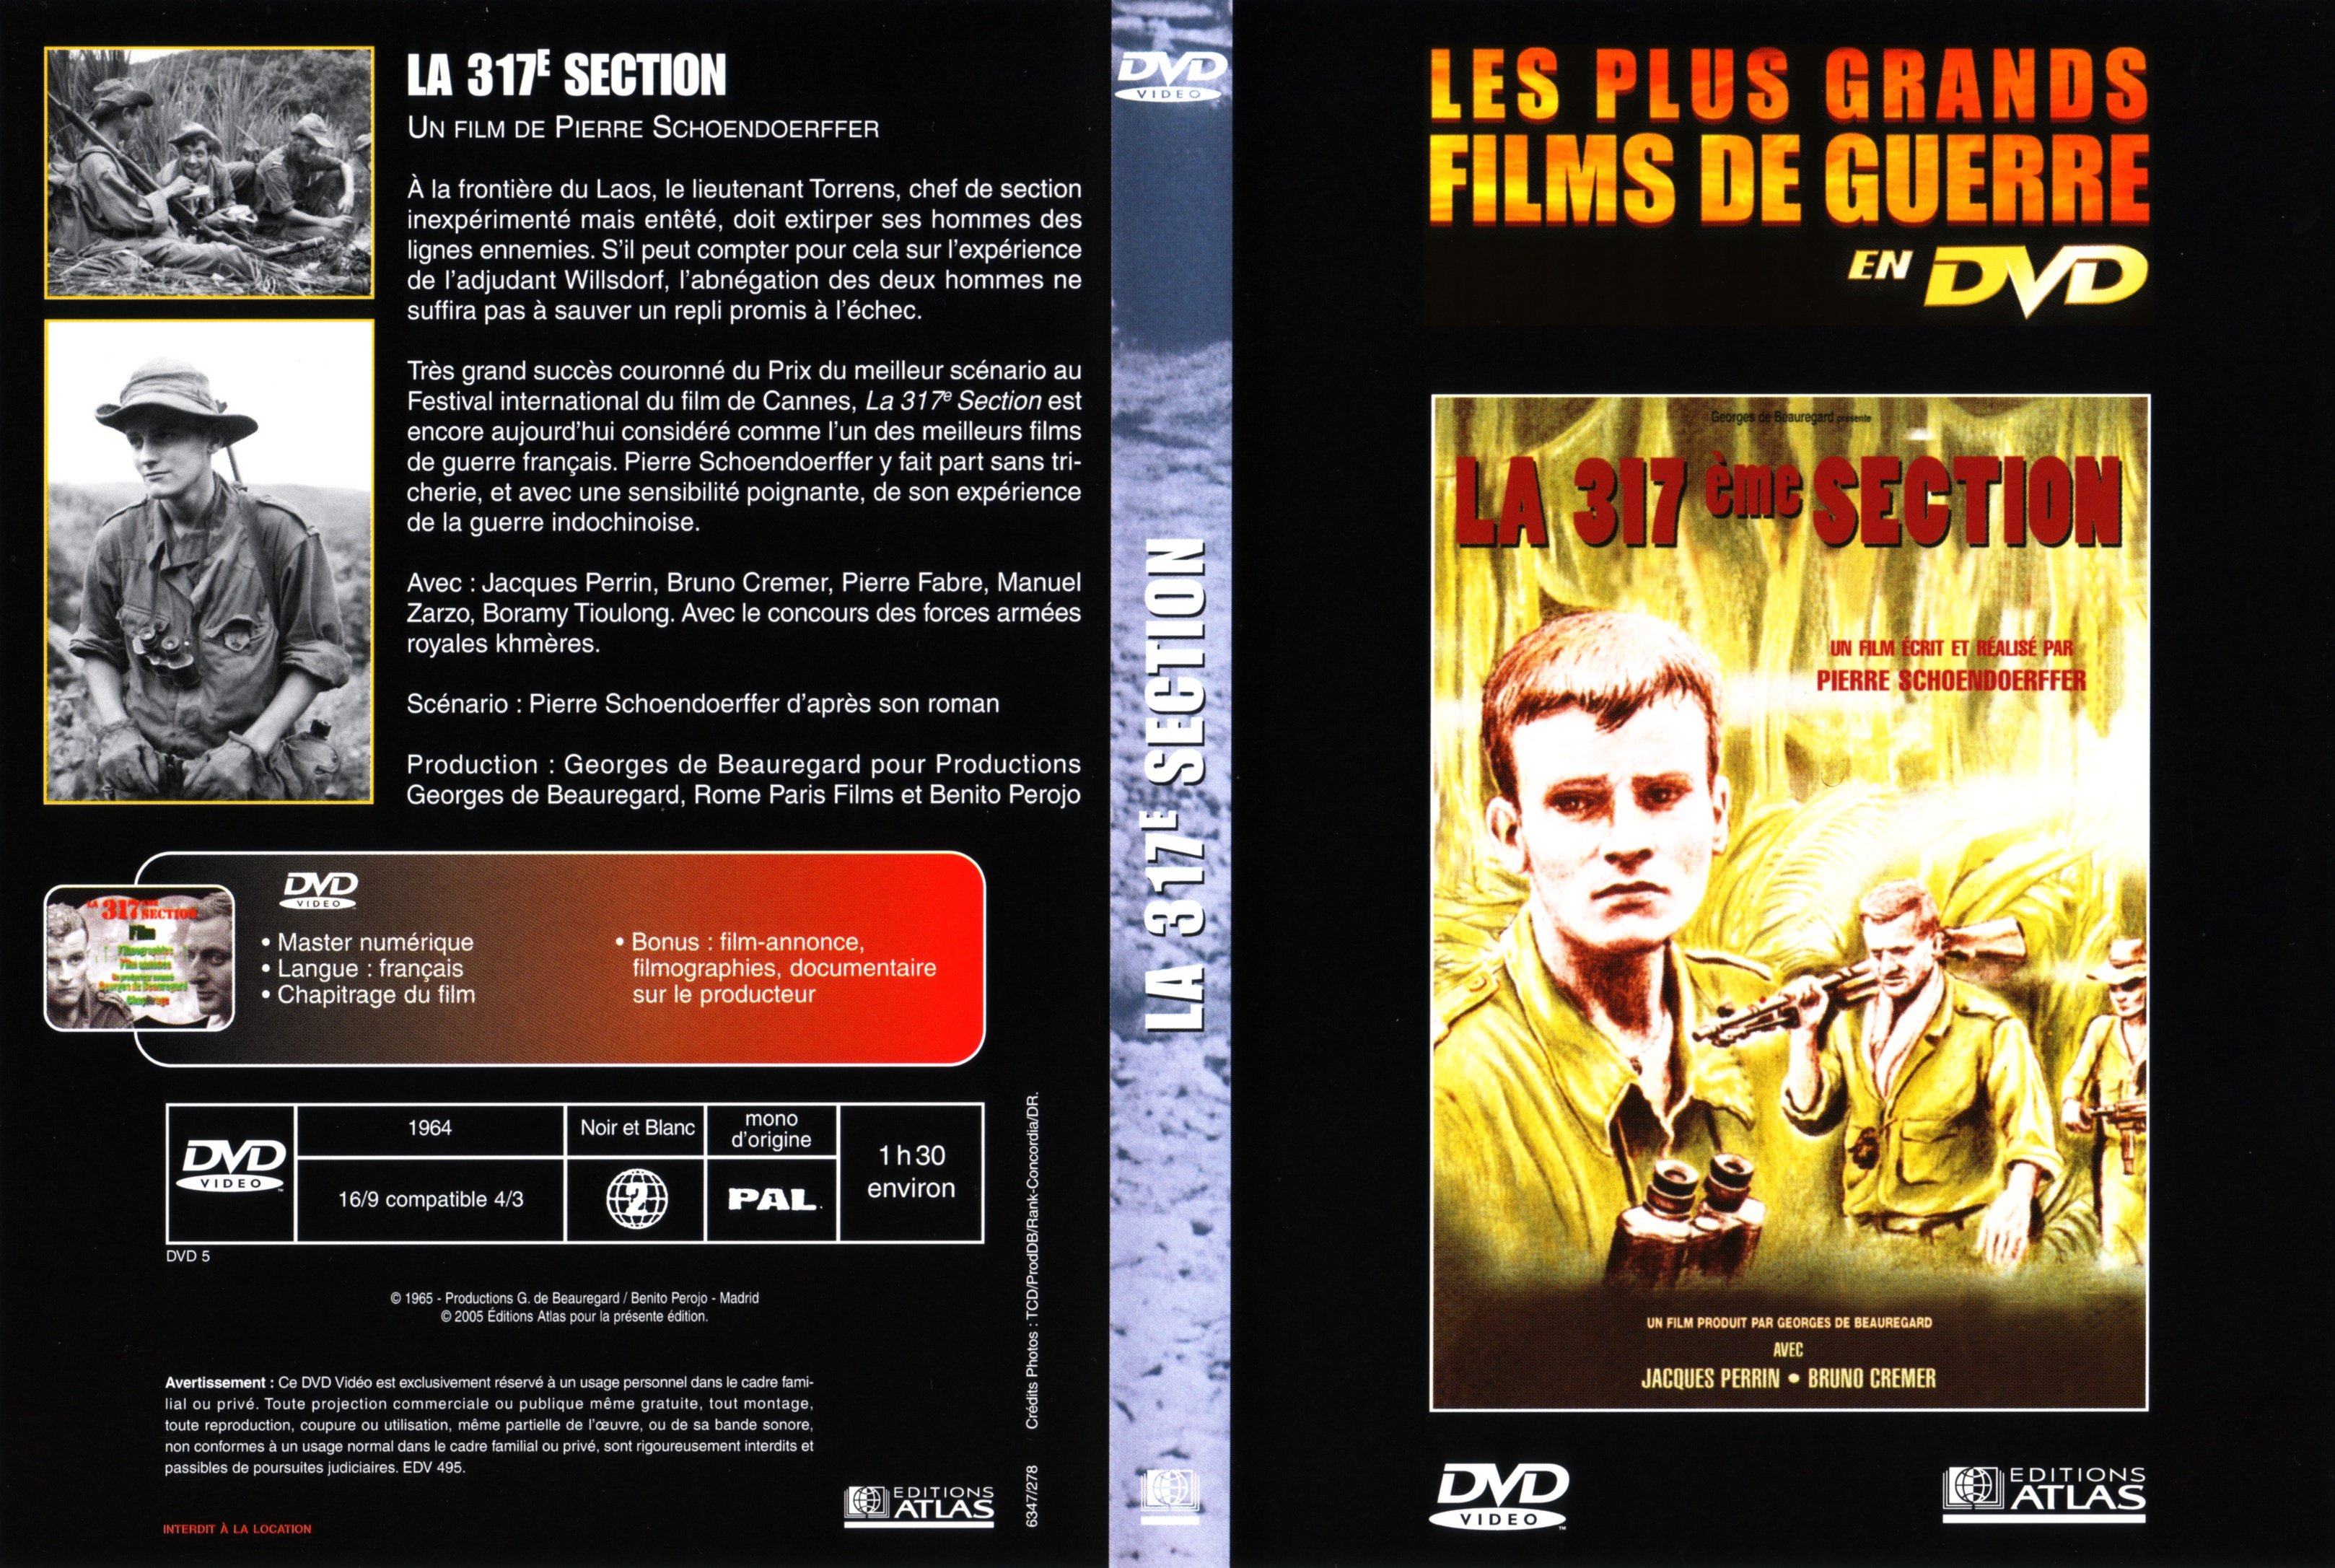 Jaquette DVD La 317me section